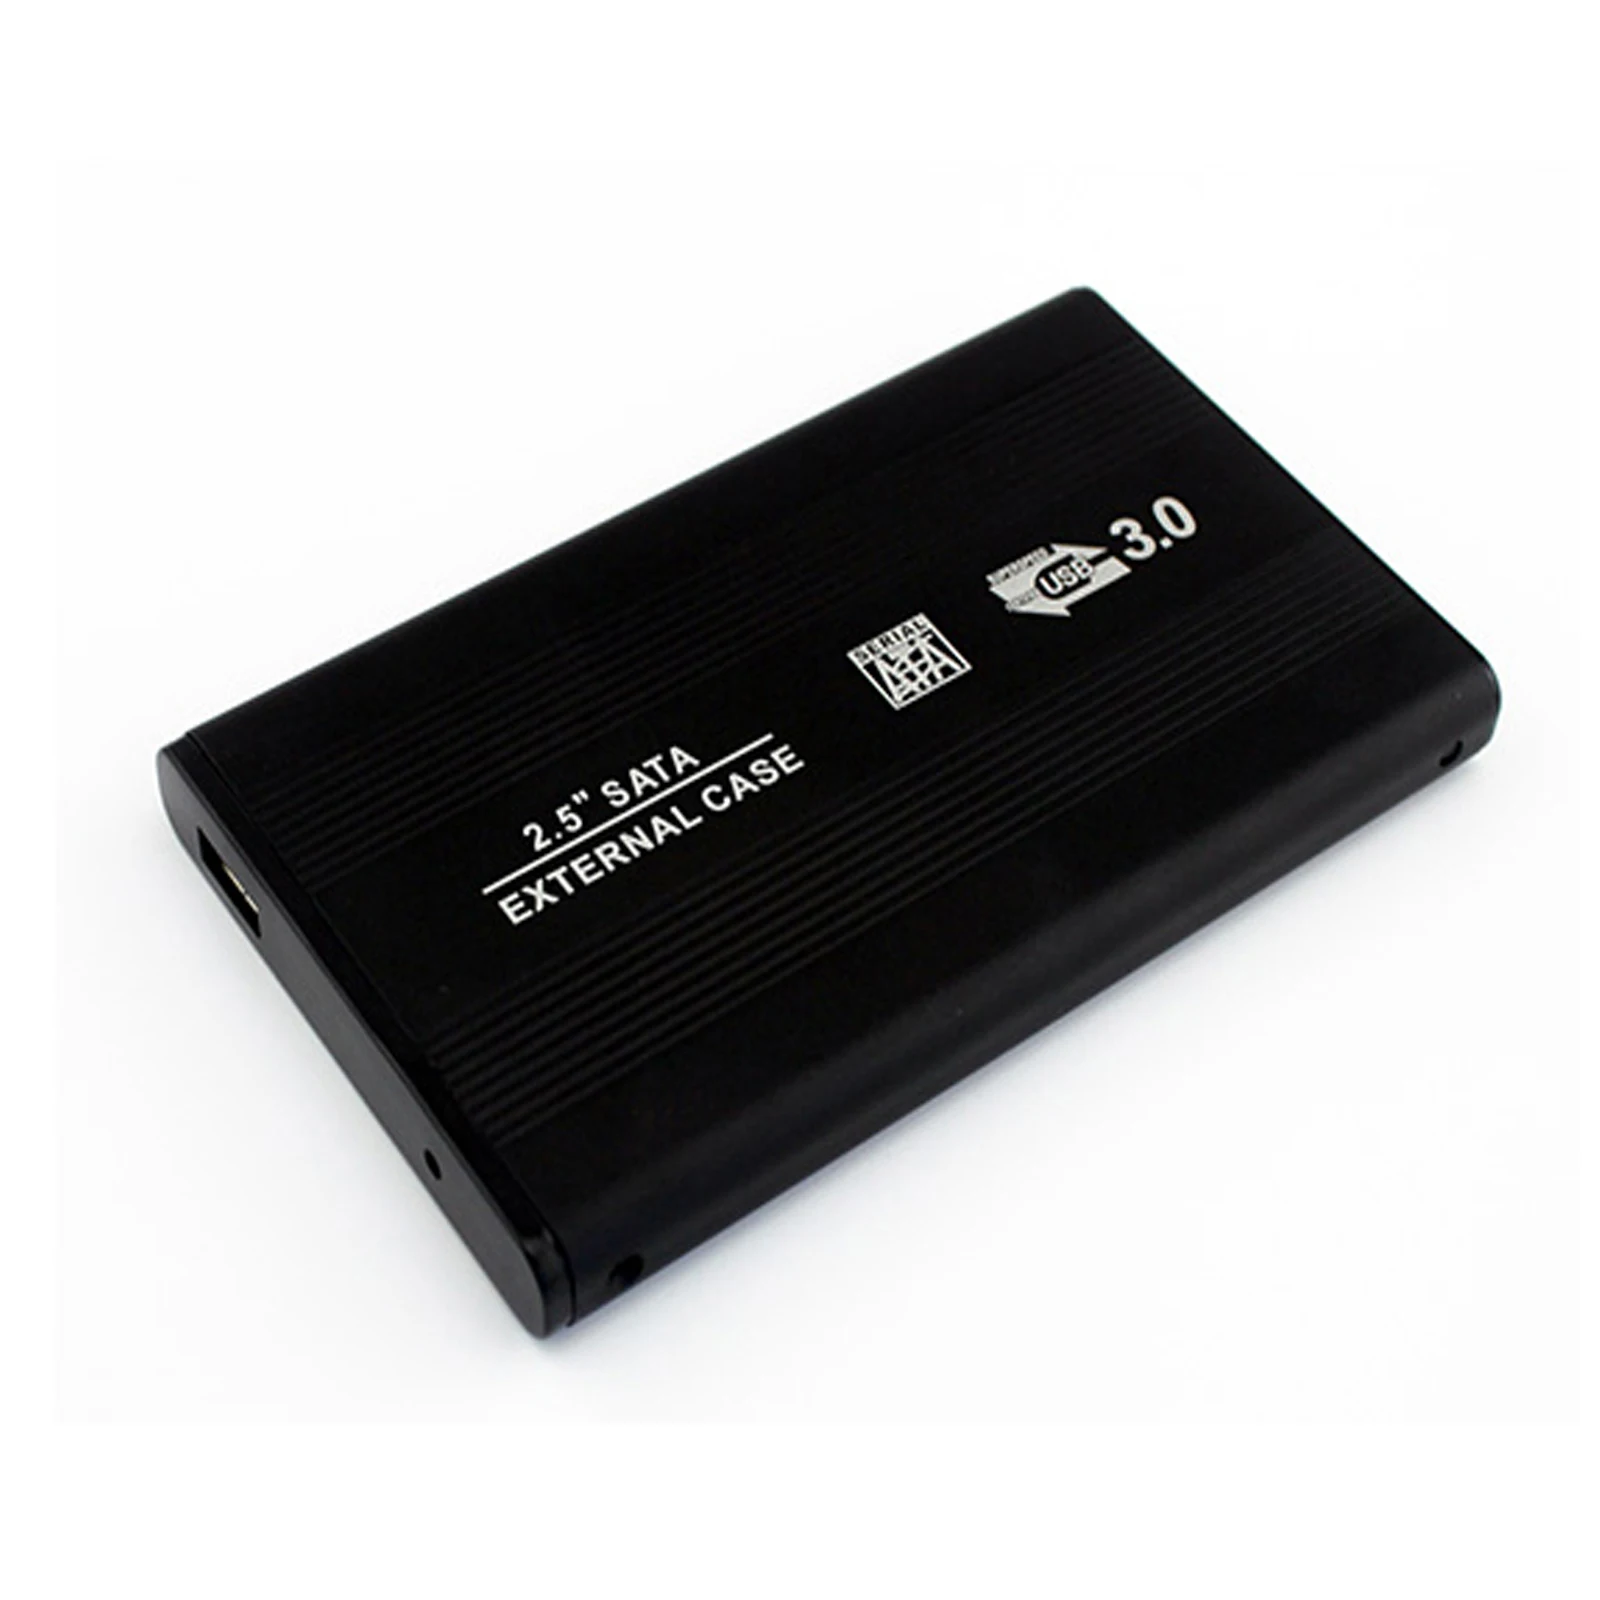 Wholesale USB 3.0 HDD Hard Drive External Enclosure 2.5 SATA HDD Case Box From m.alibaba.com